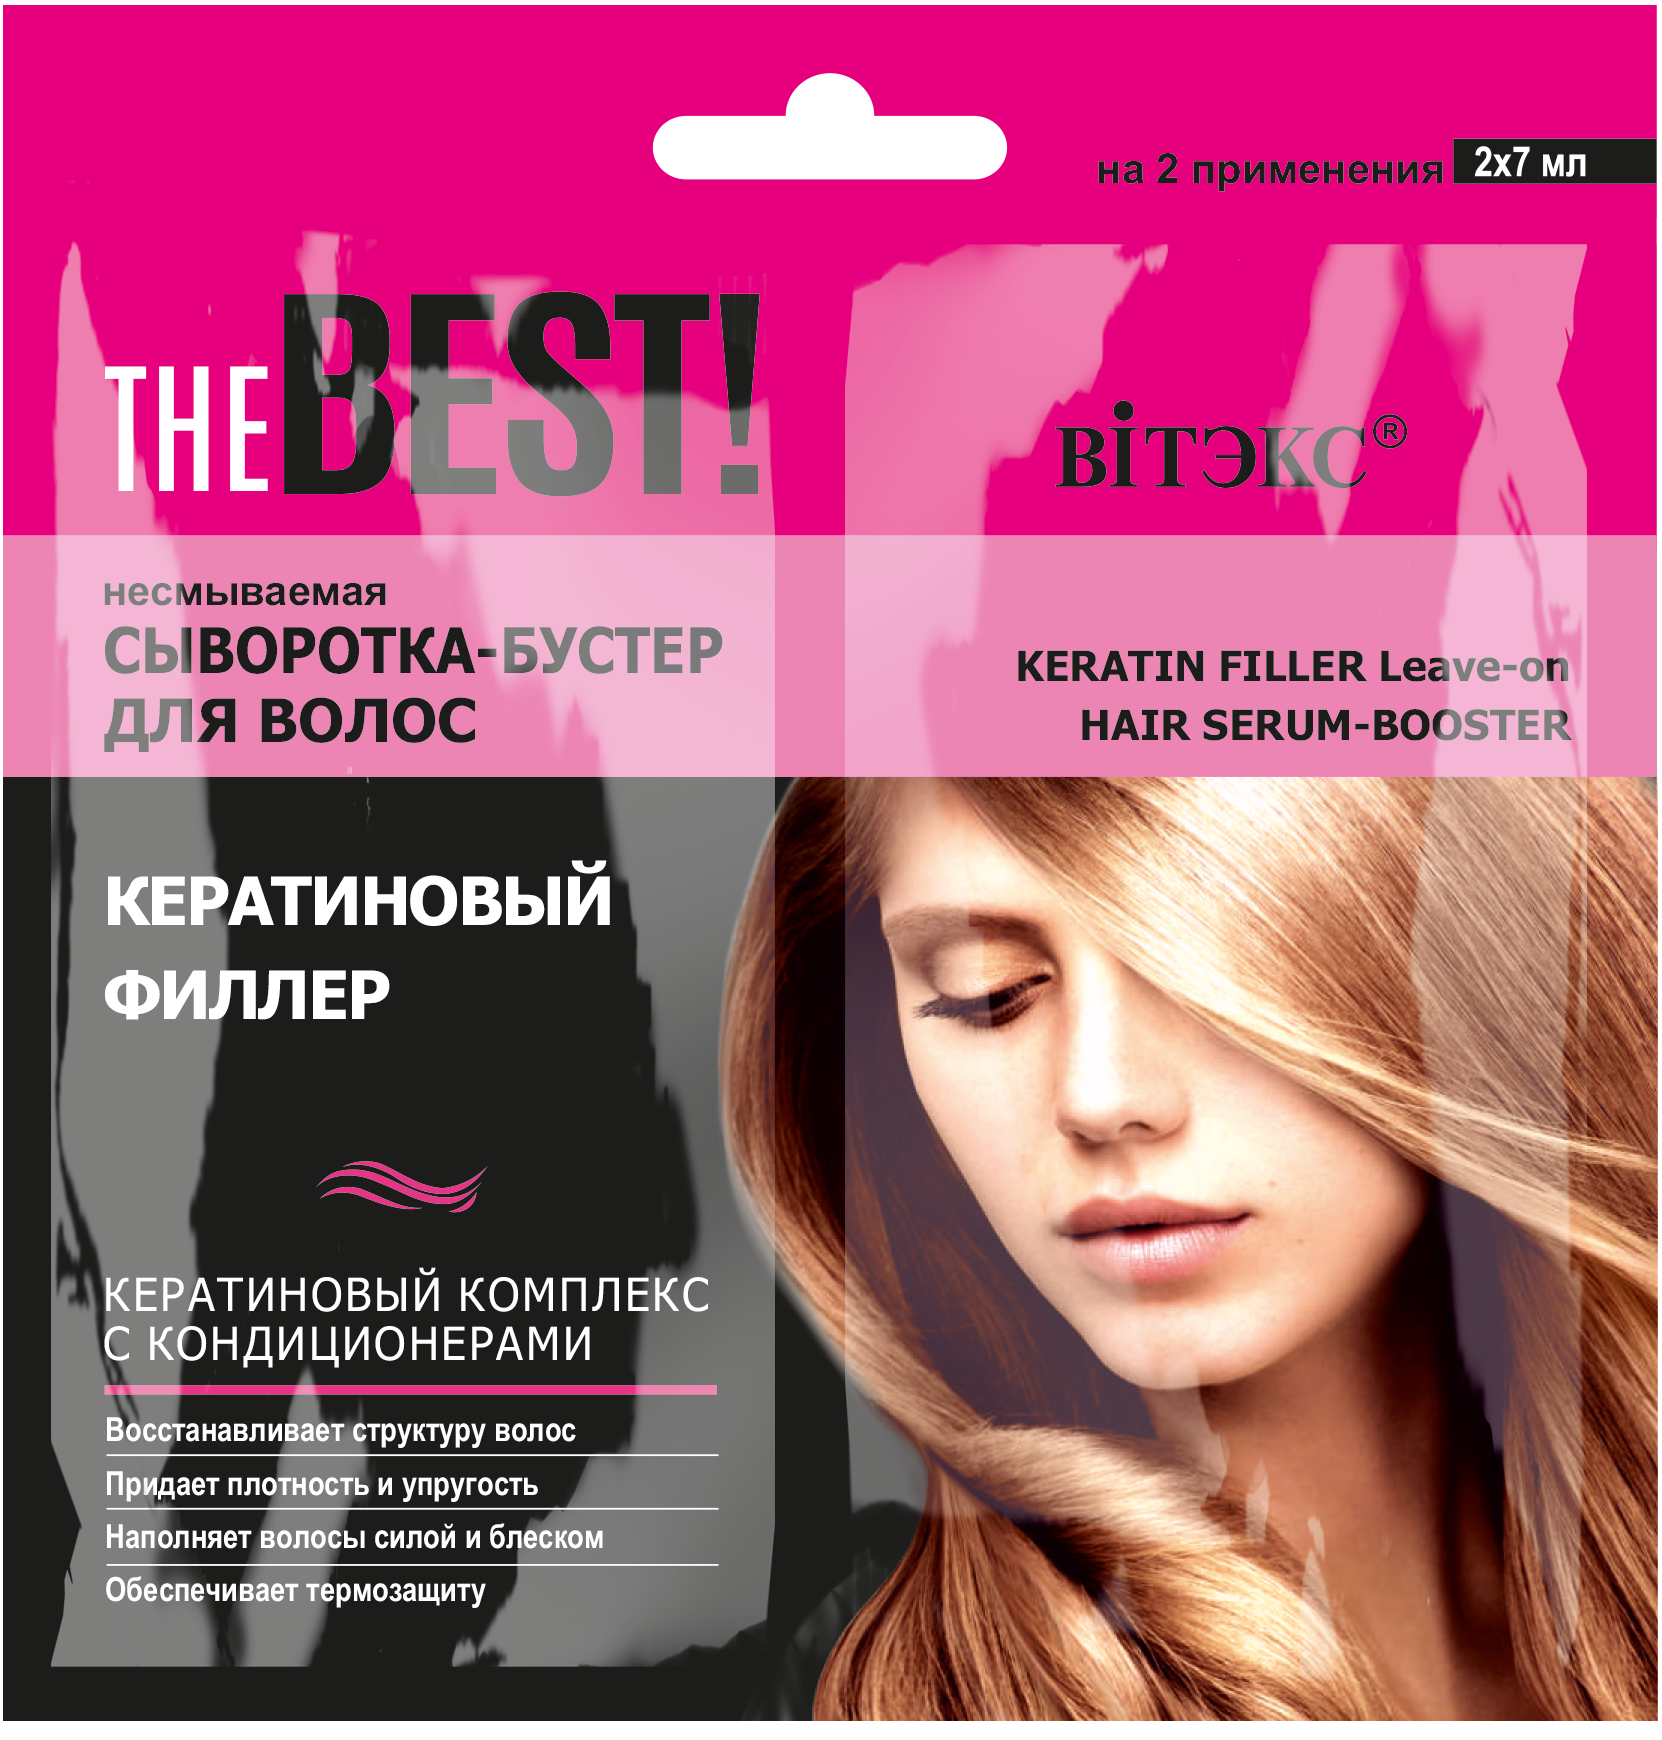 Несмываемая сыворотка-бустер Vitex для волос, кератиновый филлер THE BEST!, 7 мл